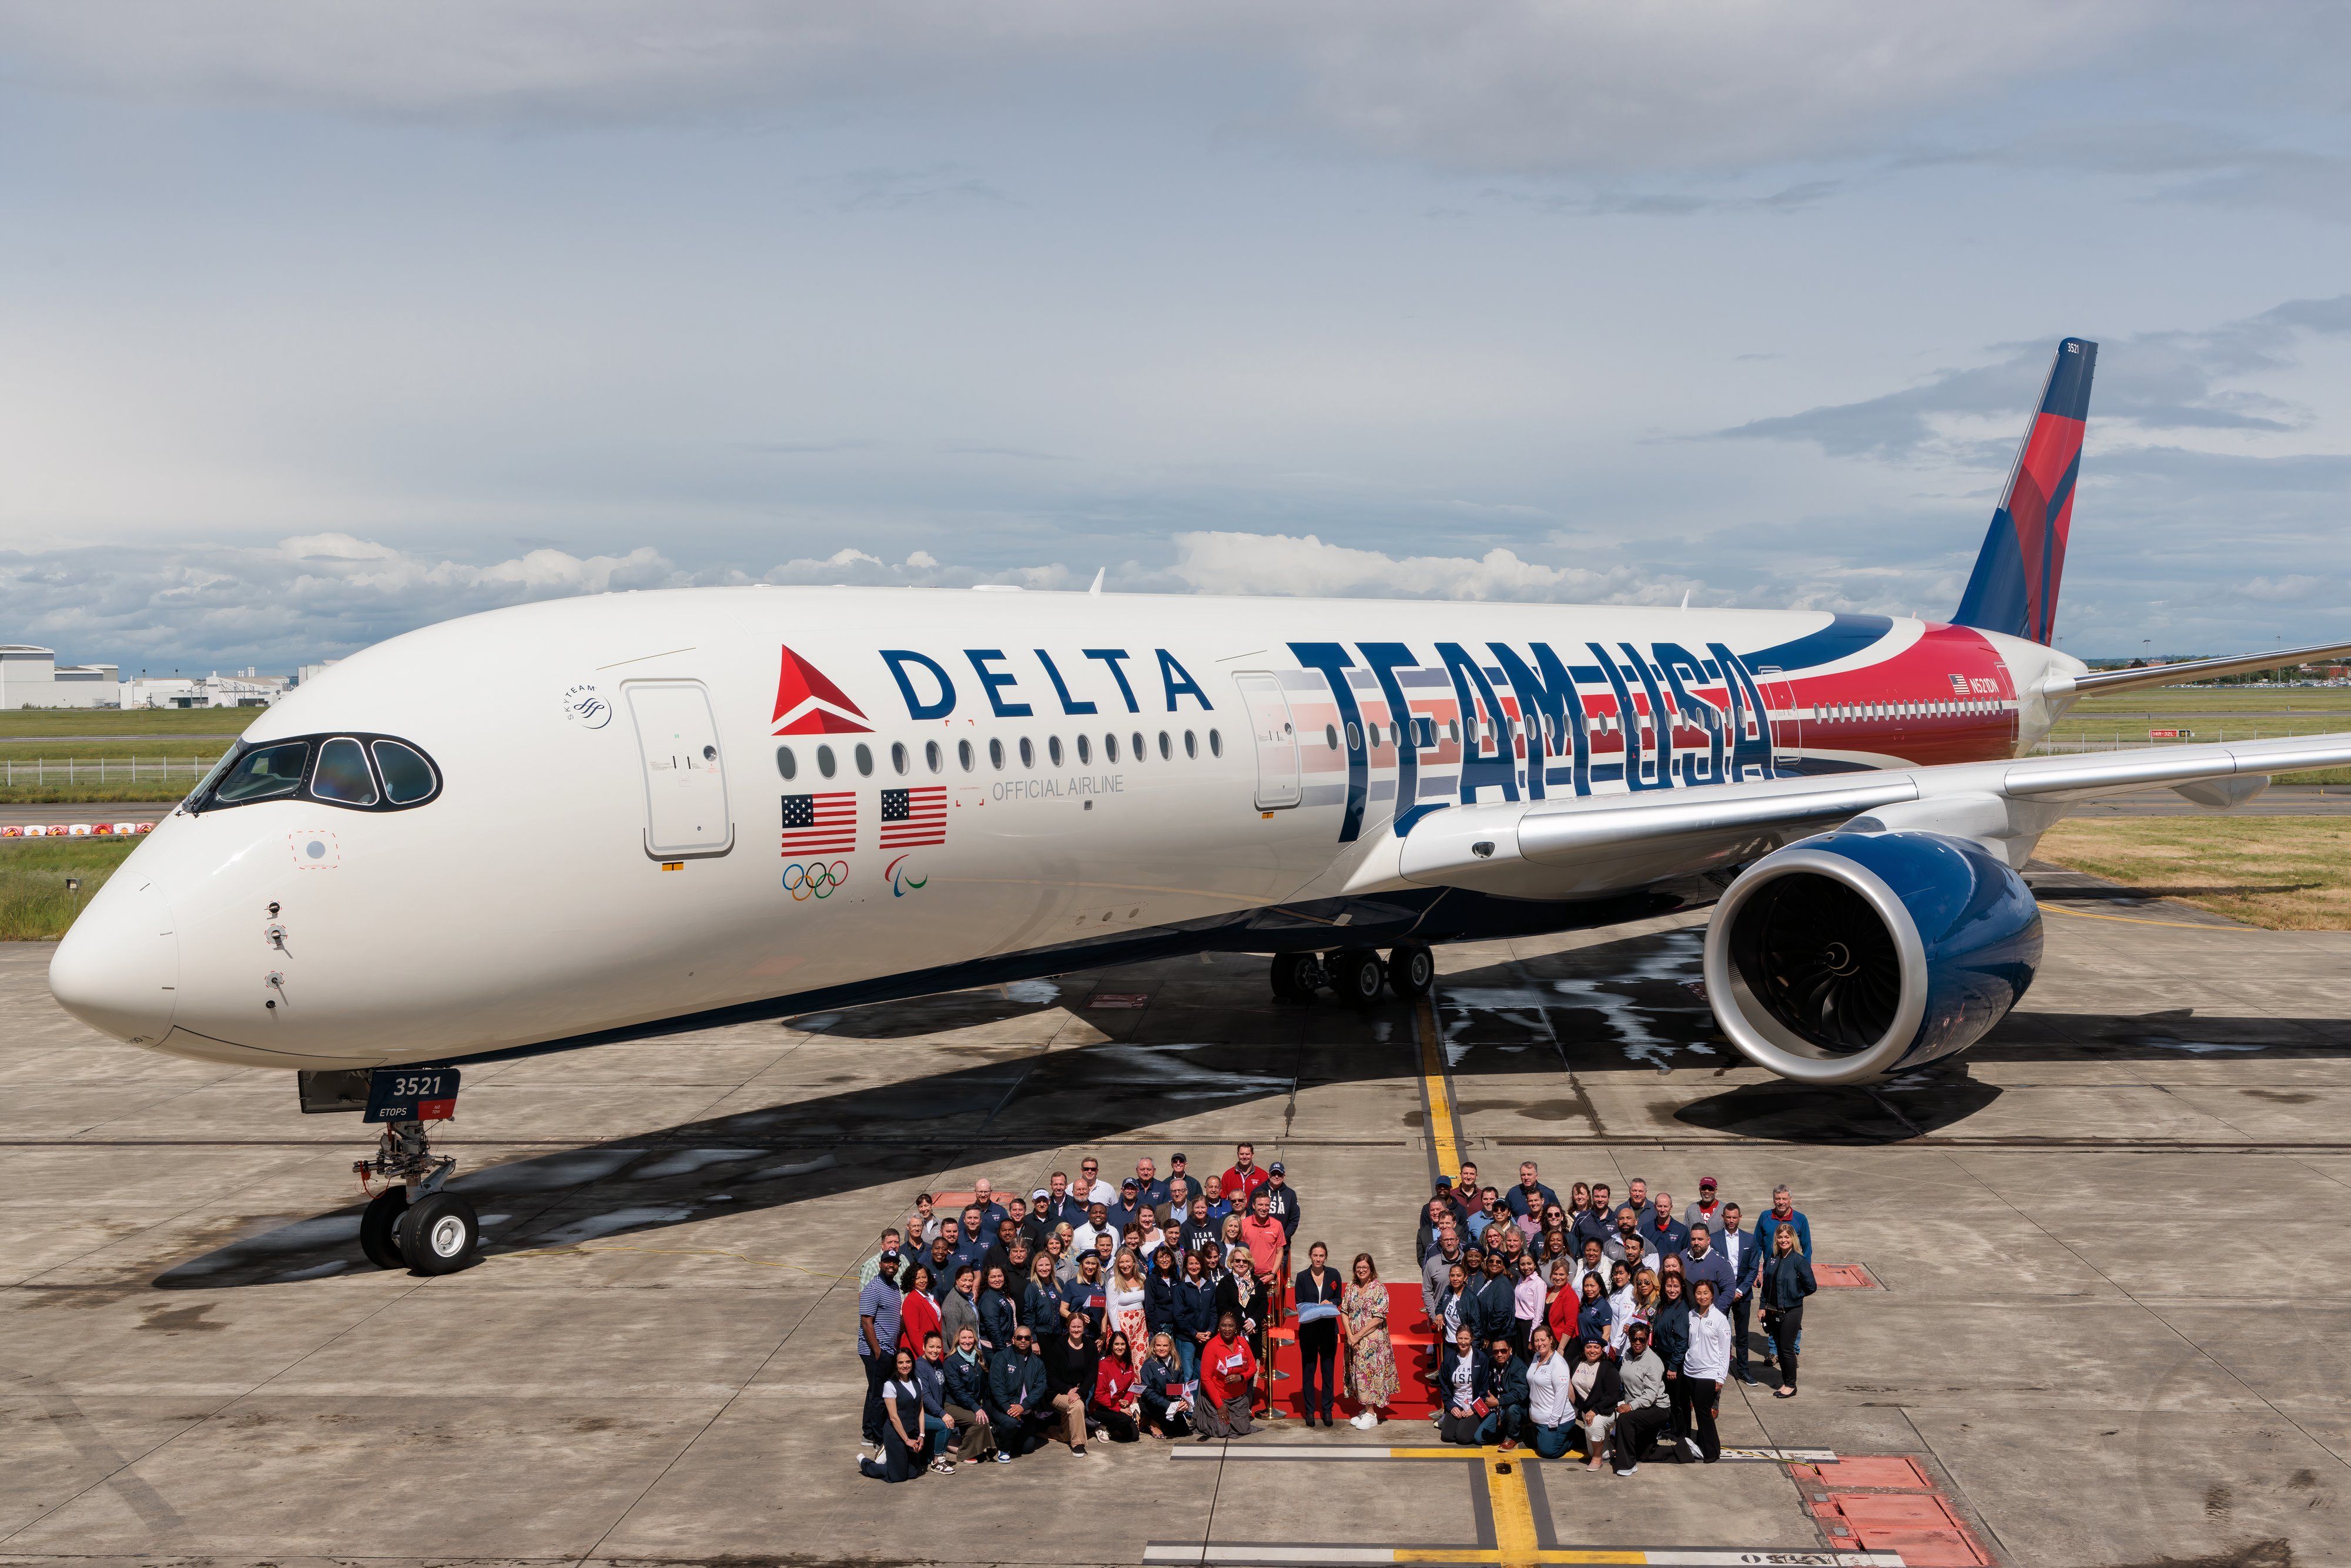 Delta A350-900 275 seats1